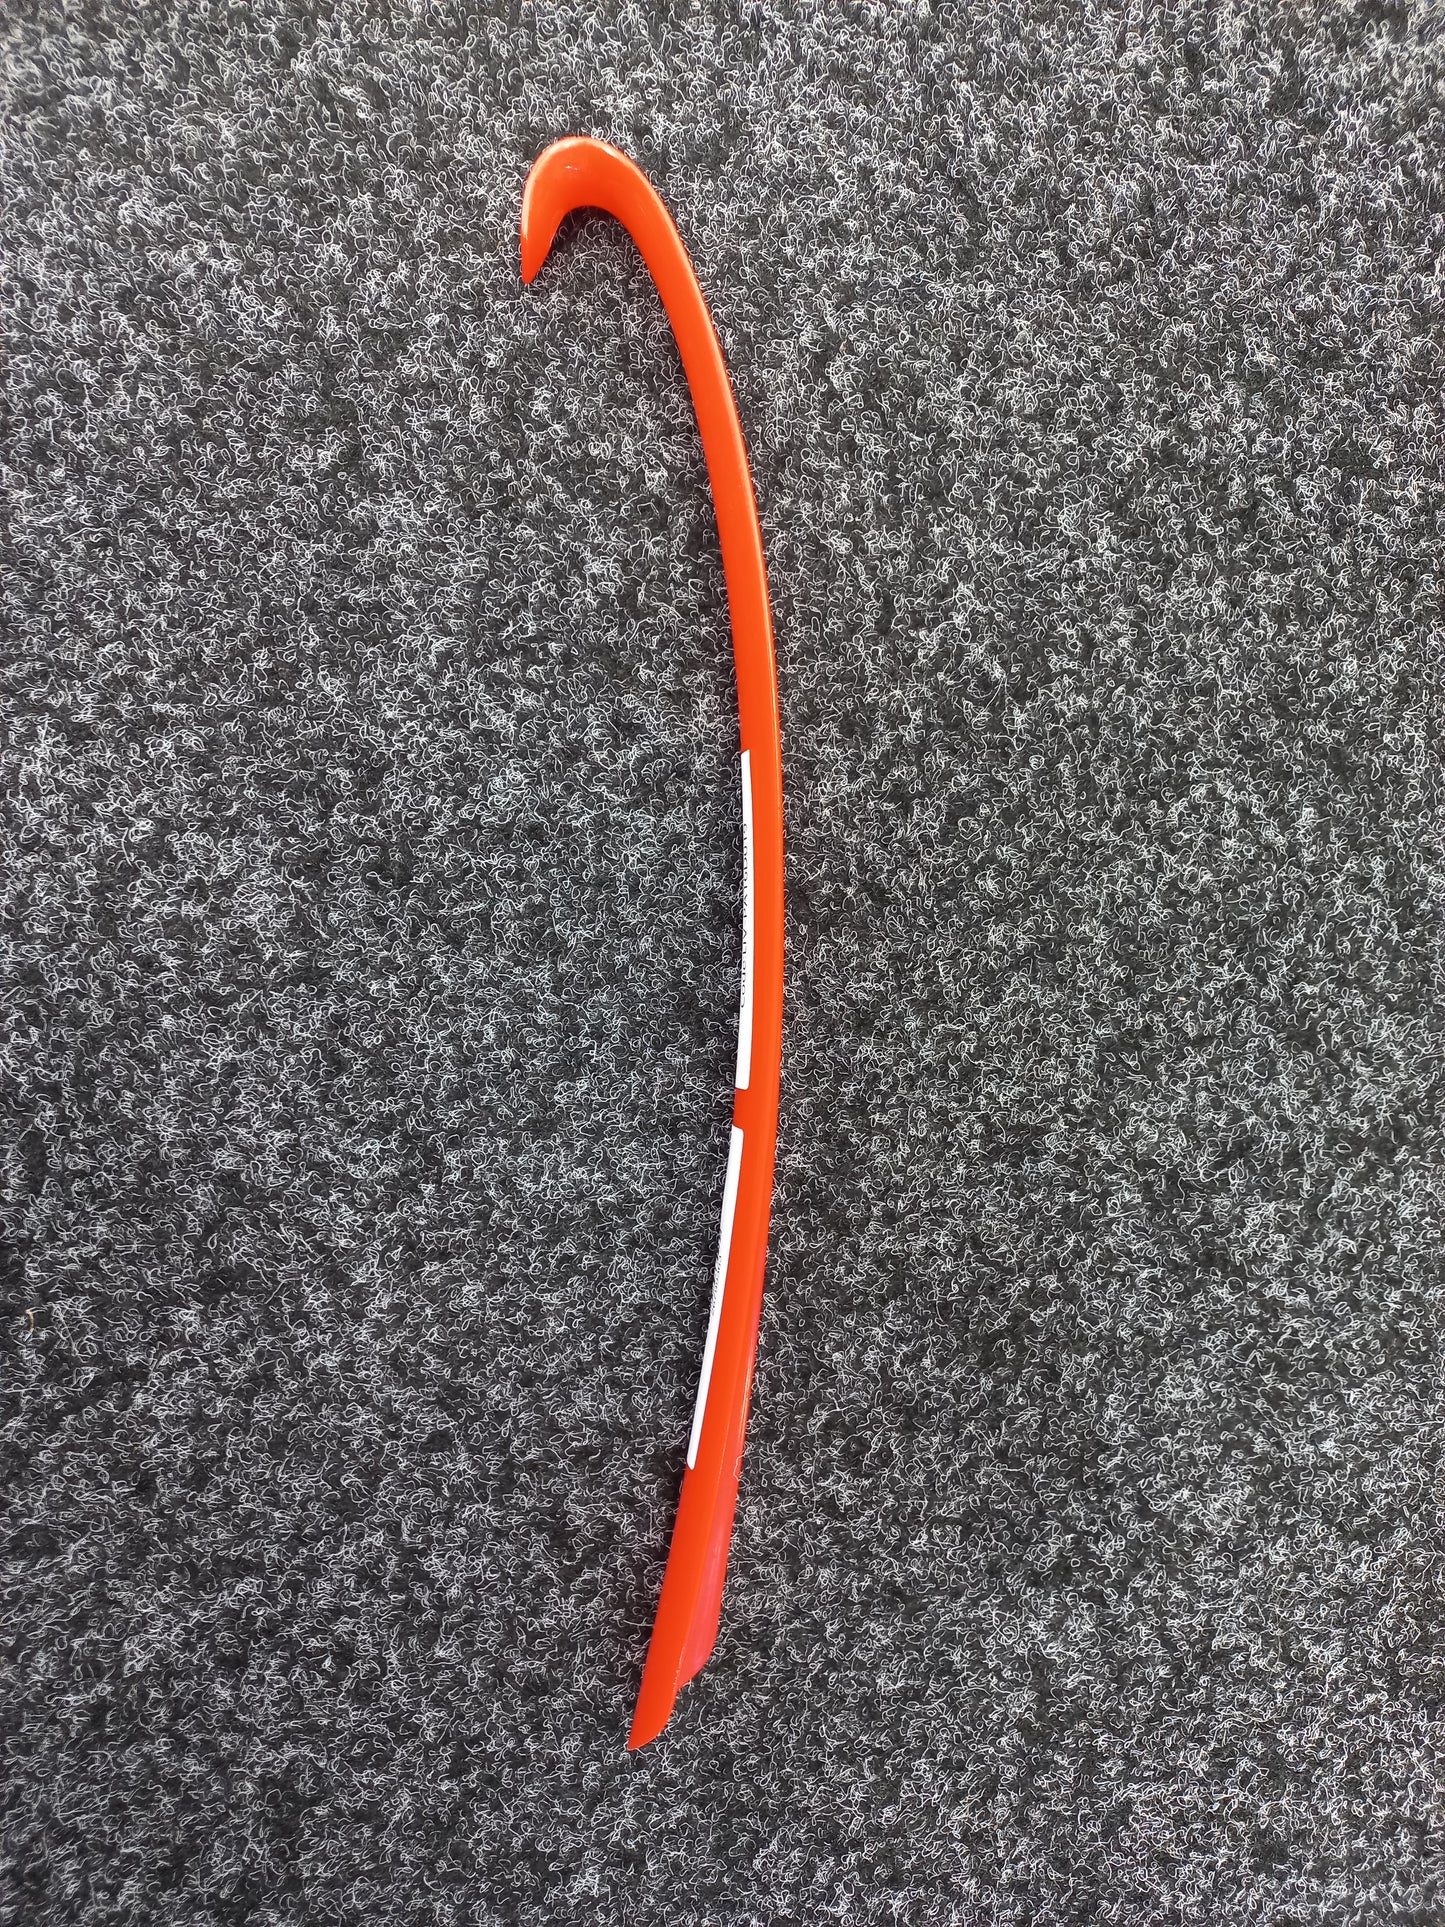 Long Plastic Shoe Horn (LIV-PA16D019)